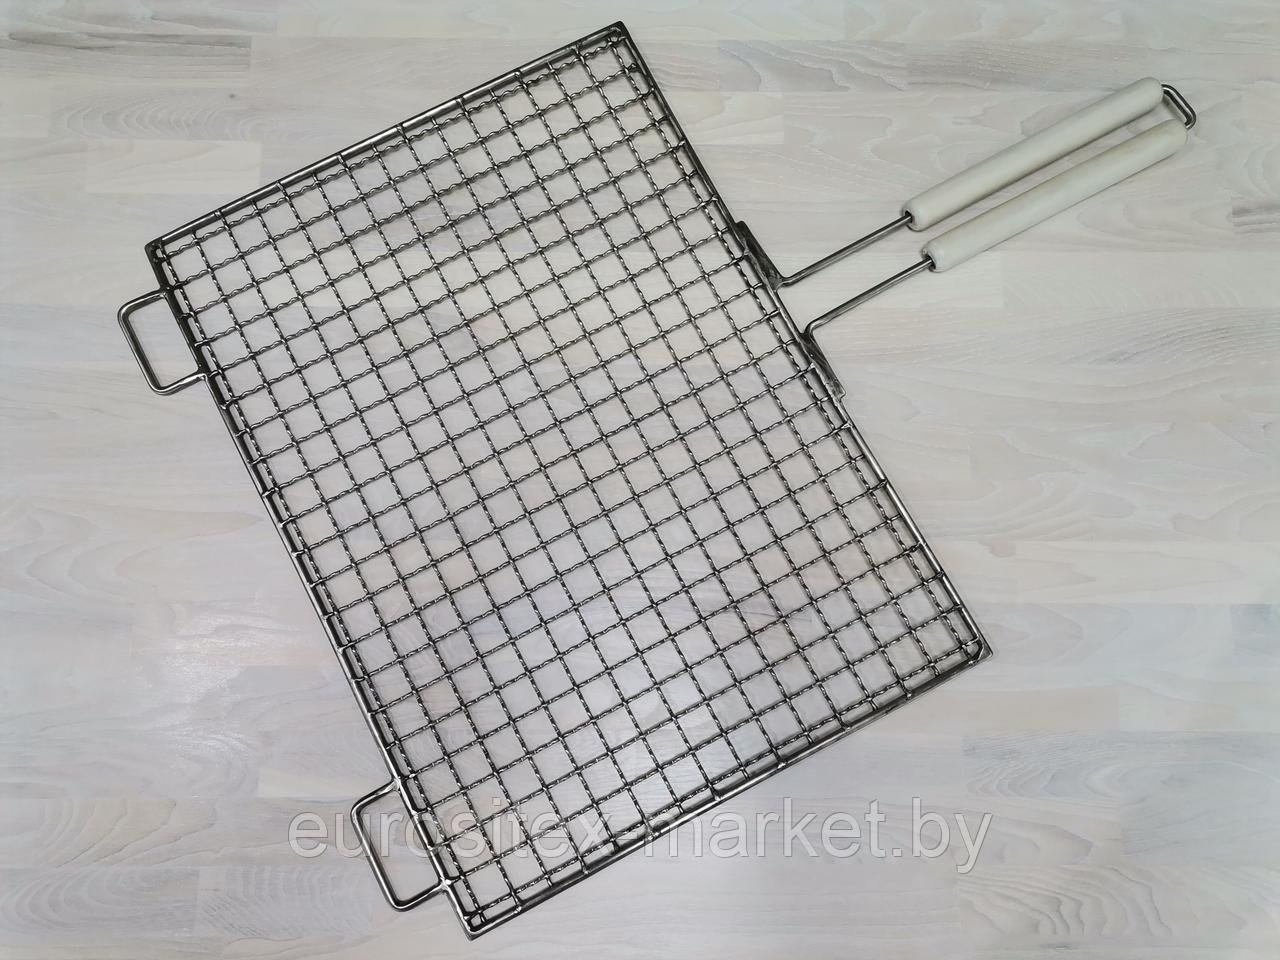 Решетка "Гриль", поверхность для жарки 510х375 мм, с ручкой -держателем, материал нержавеющая сталь